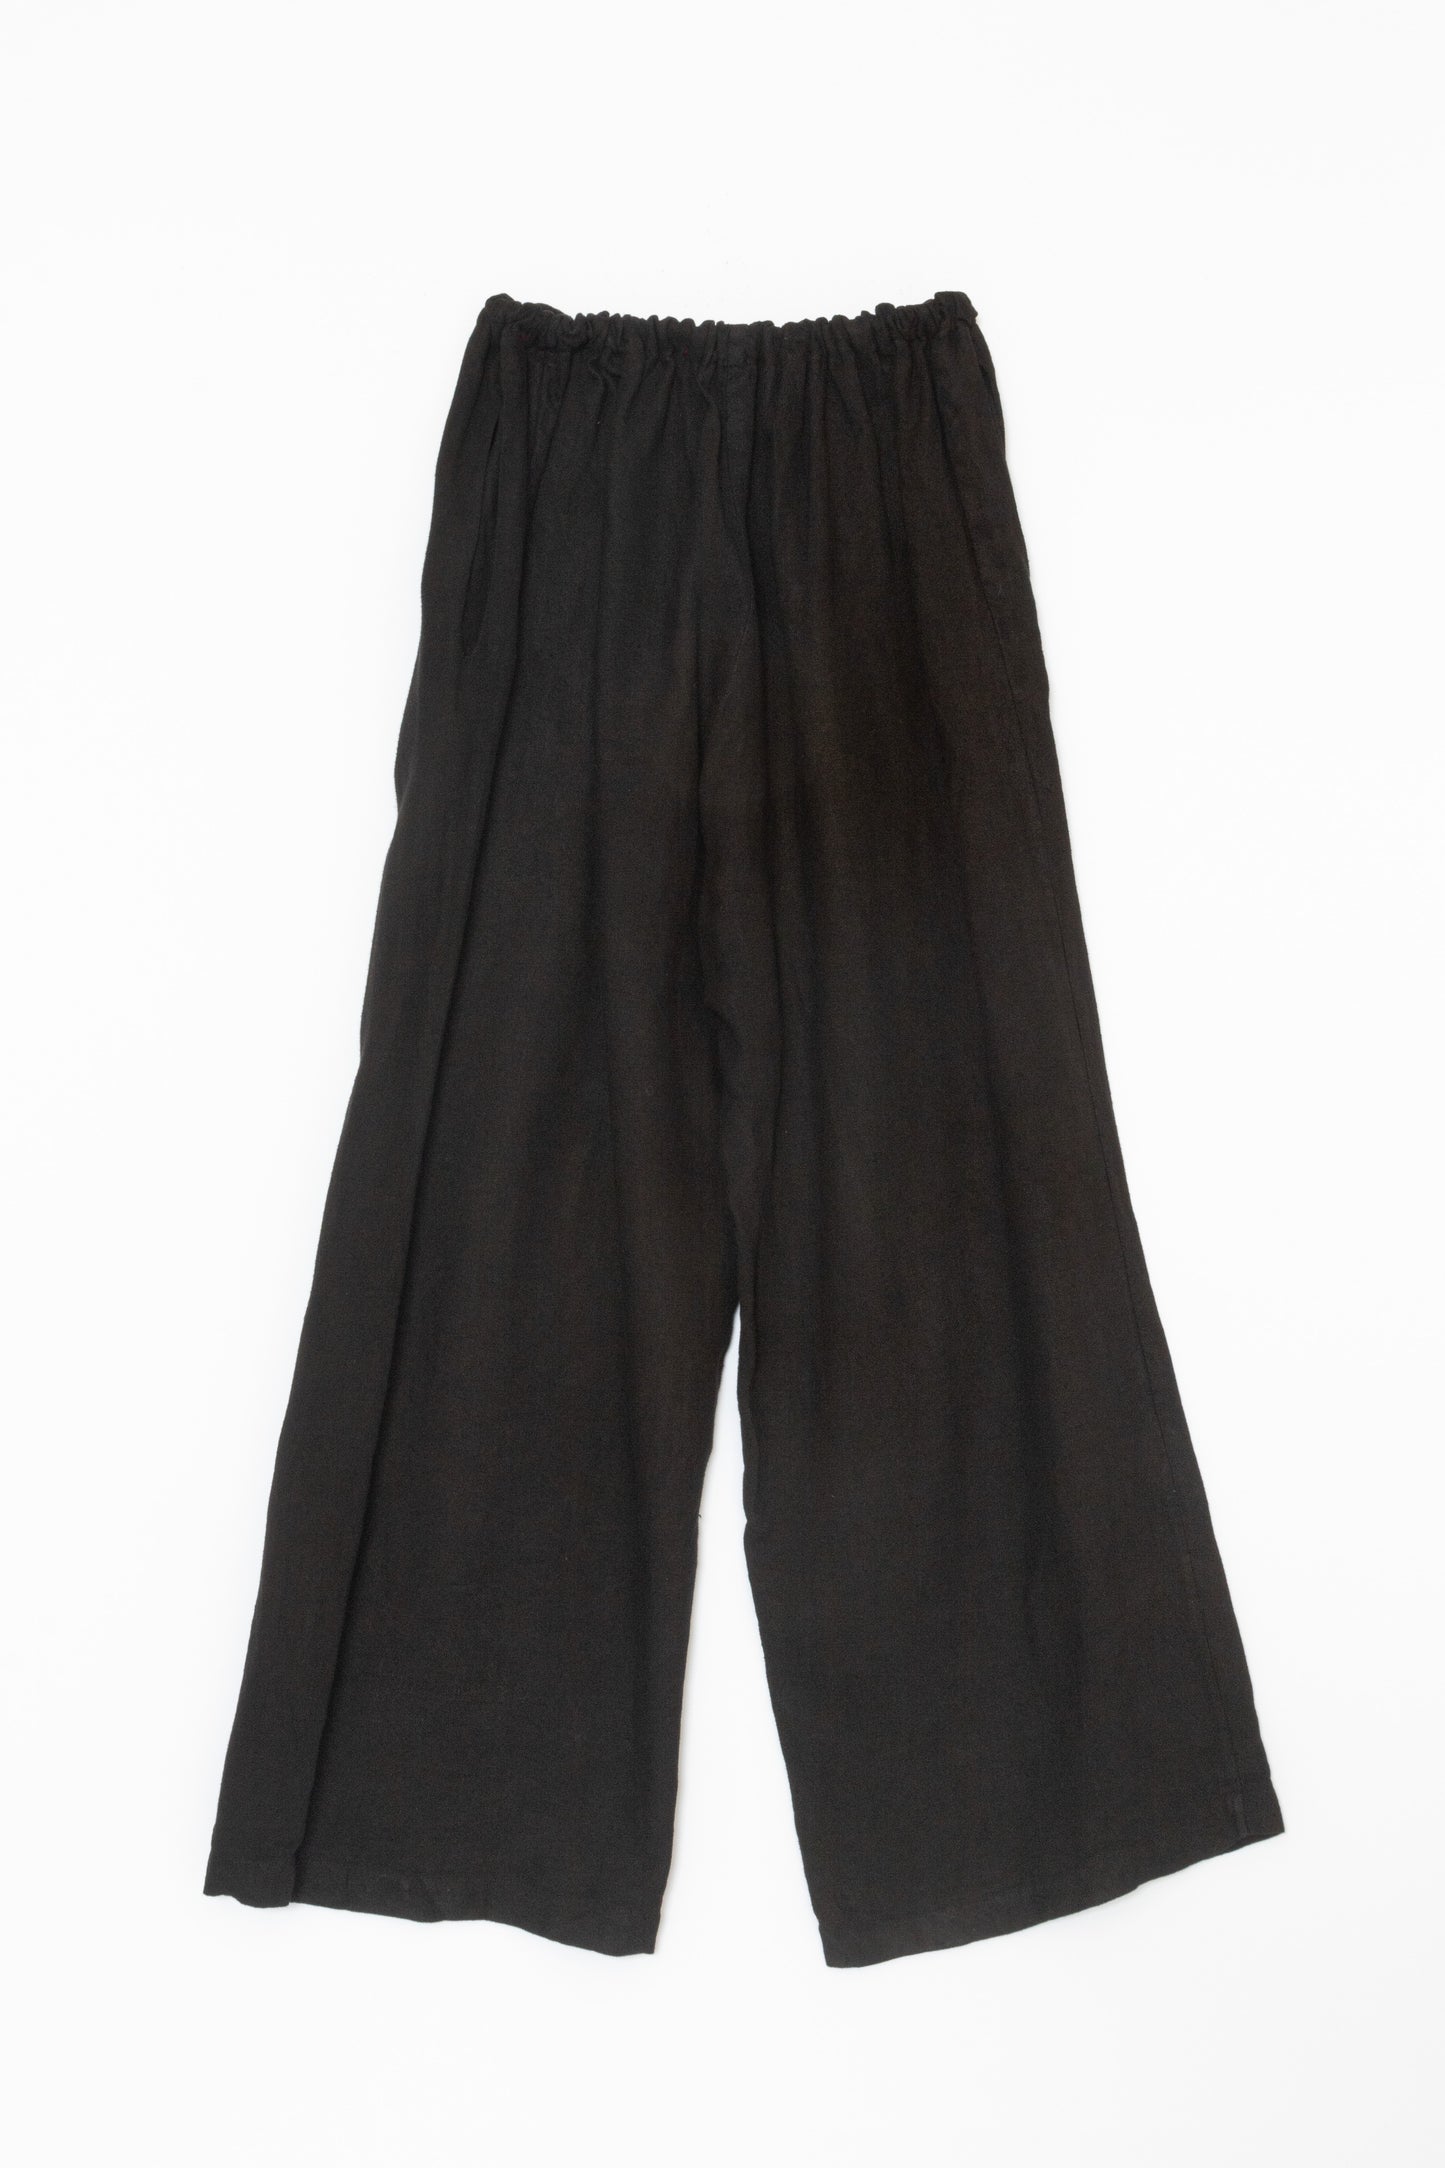 [Whiteread] Trousers 03 - Ebony Linen